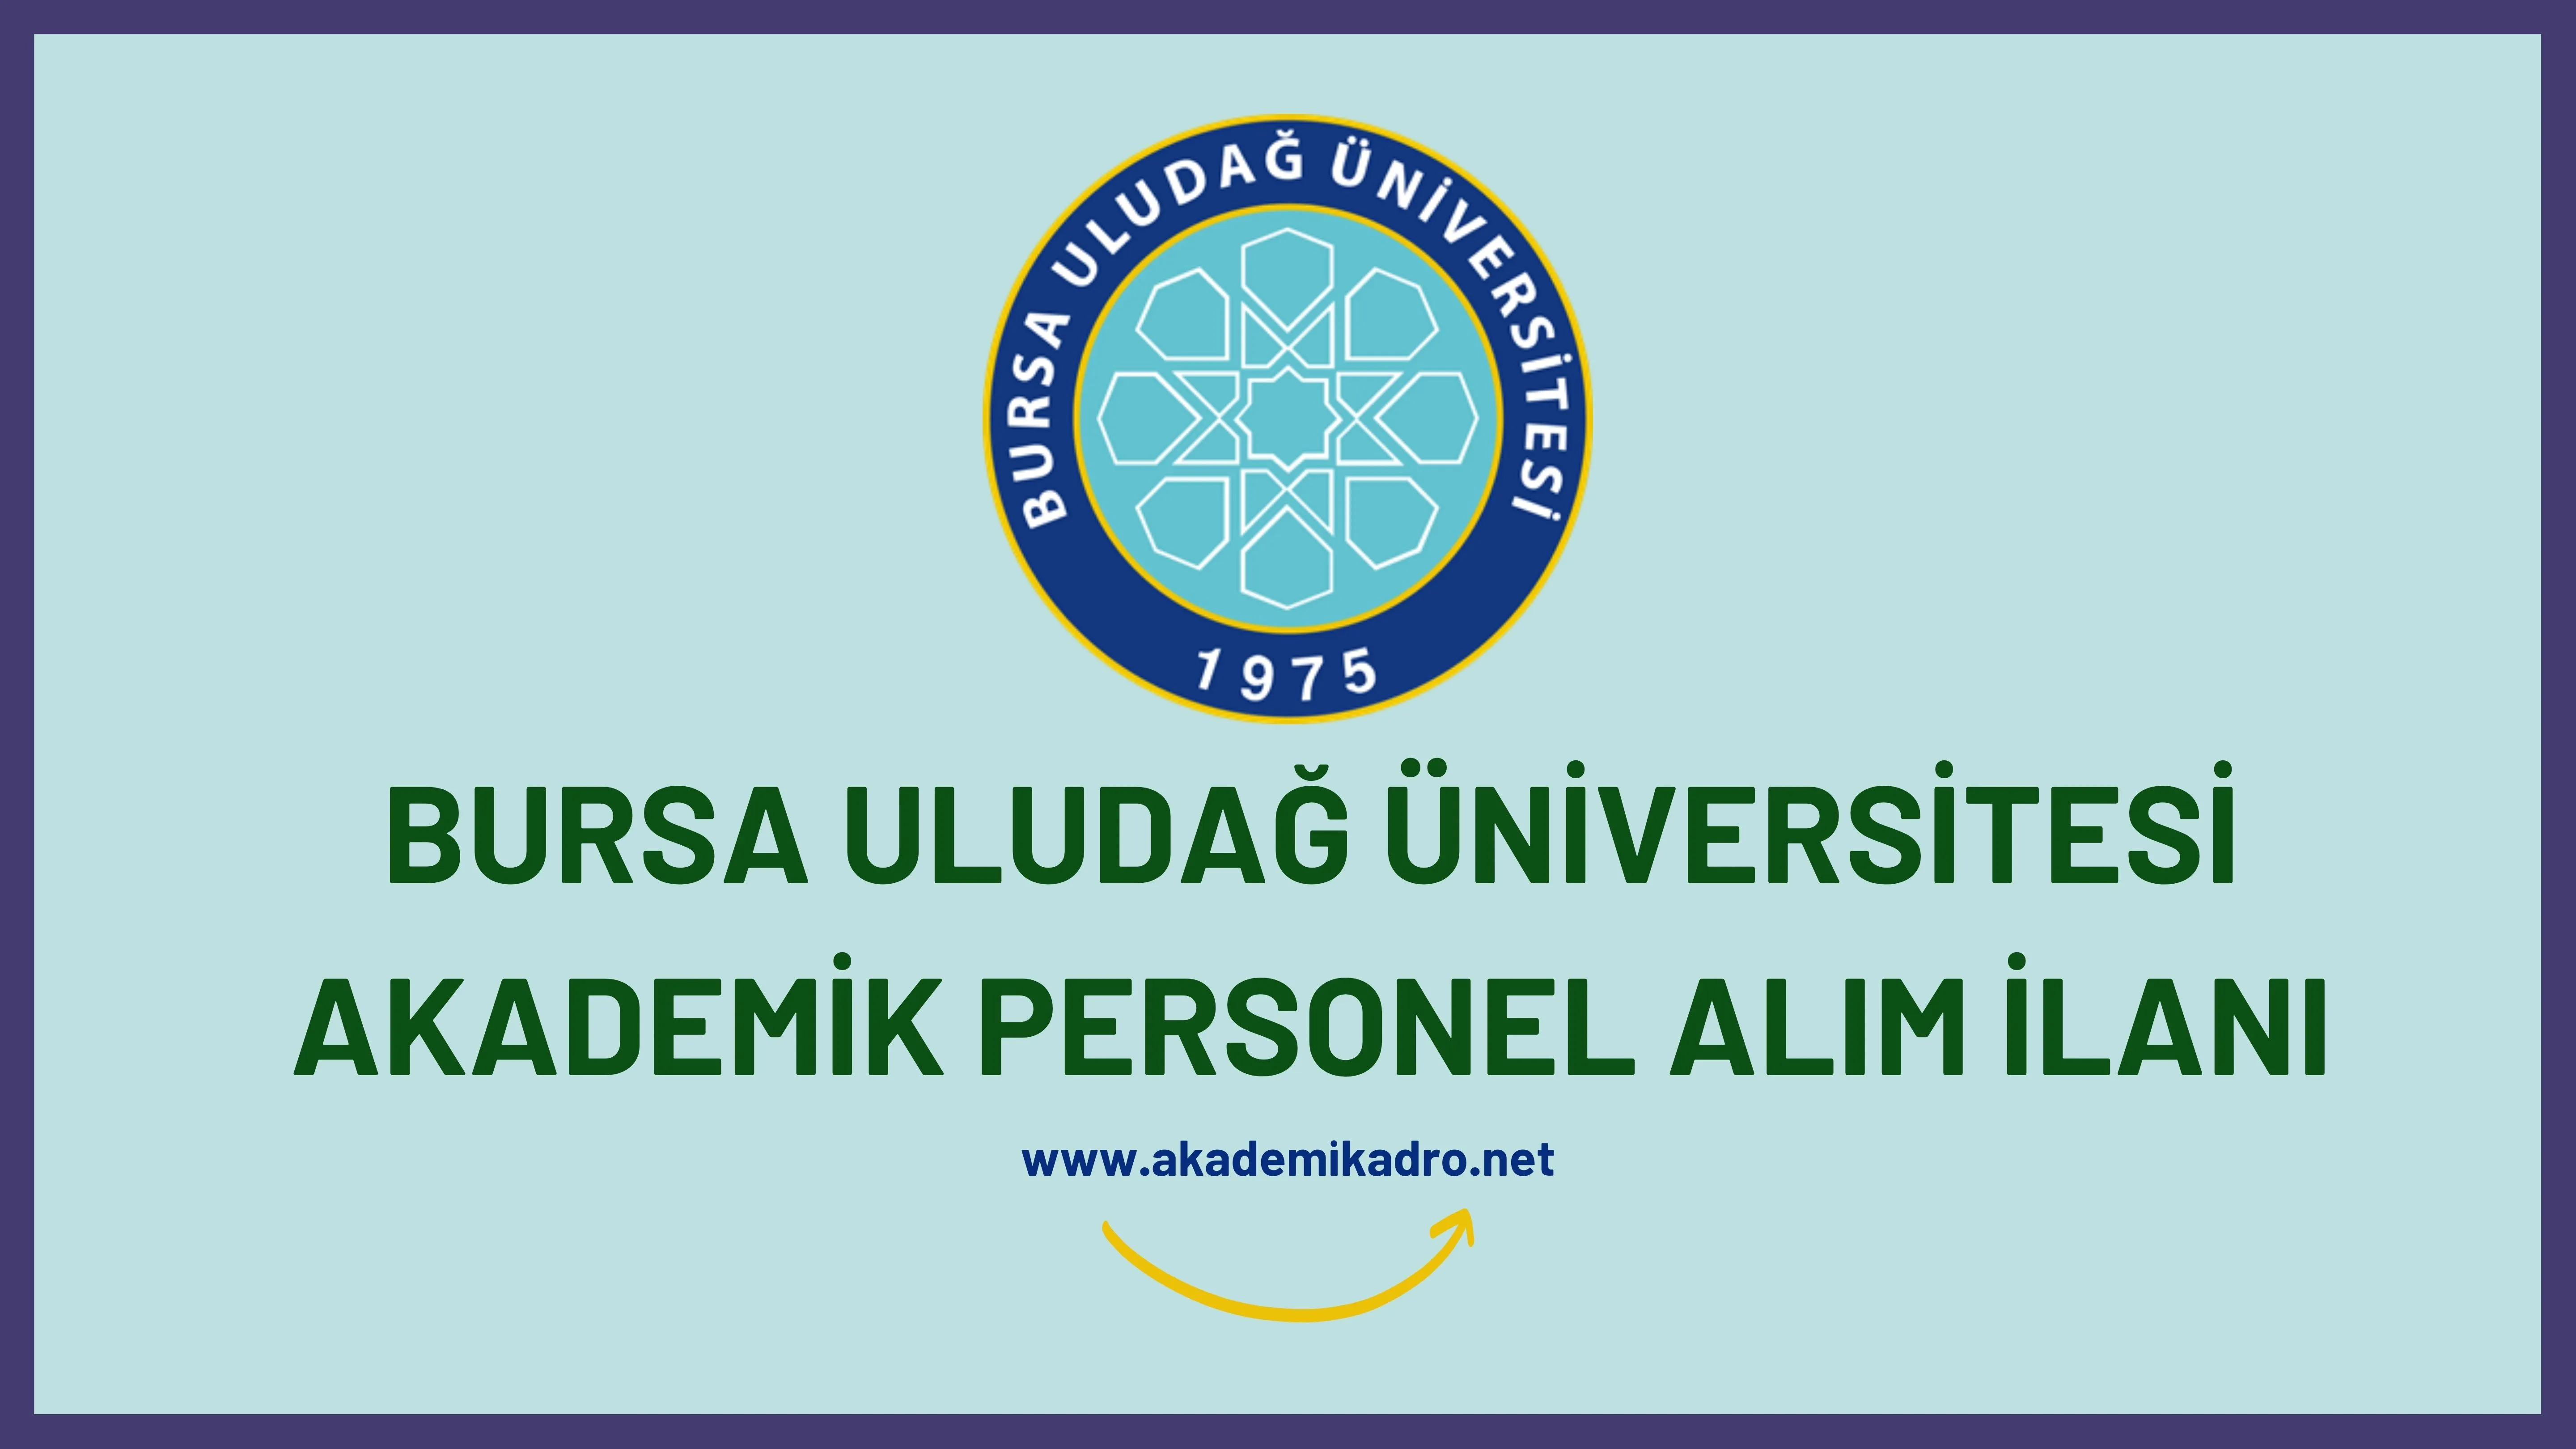 Bursa Uludağ Üniversitesi birçok alandan 55 akademik personel alacak.